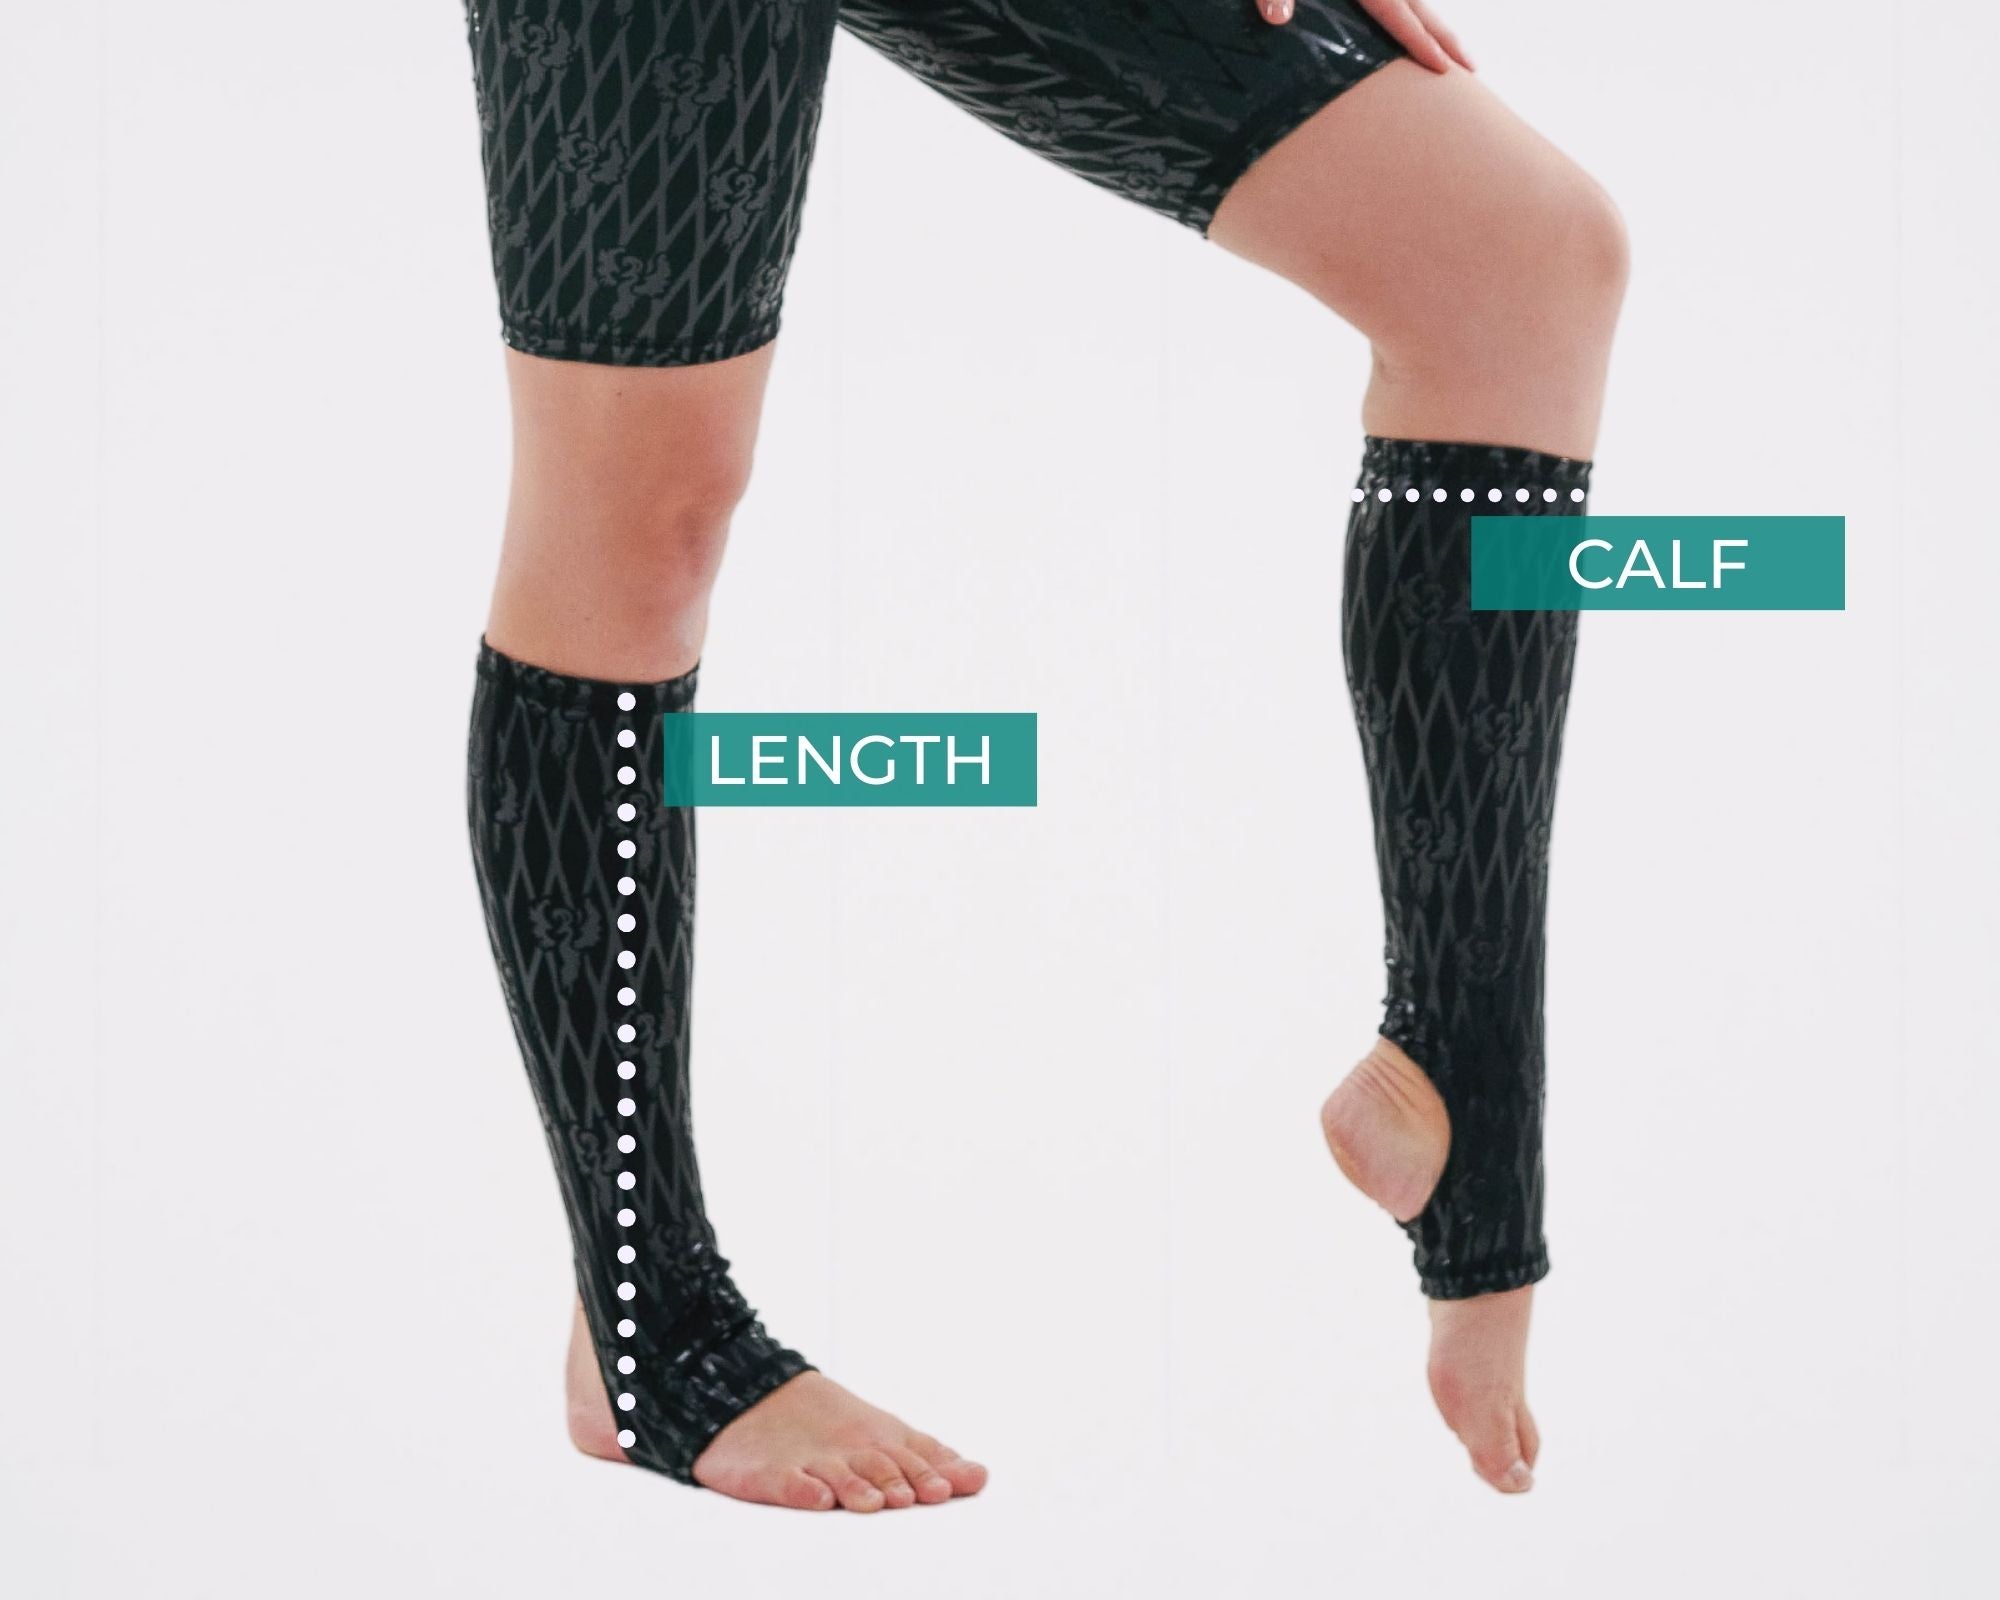 Knee High Socks Measurement Guide